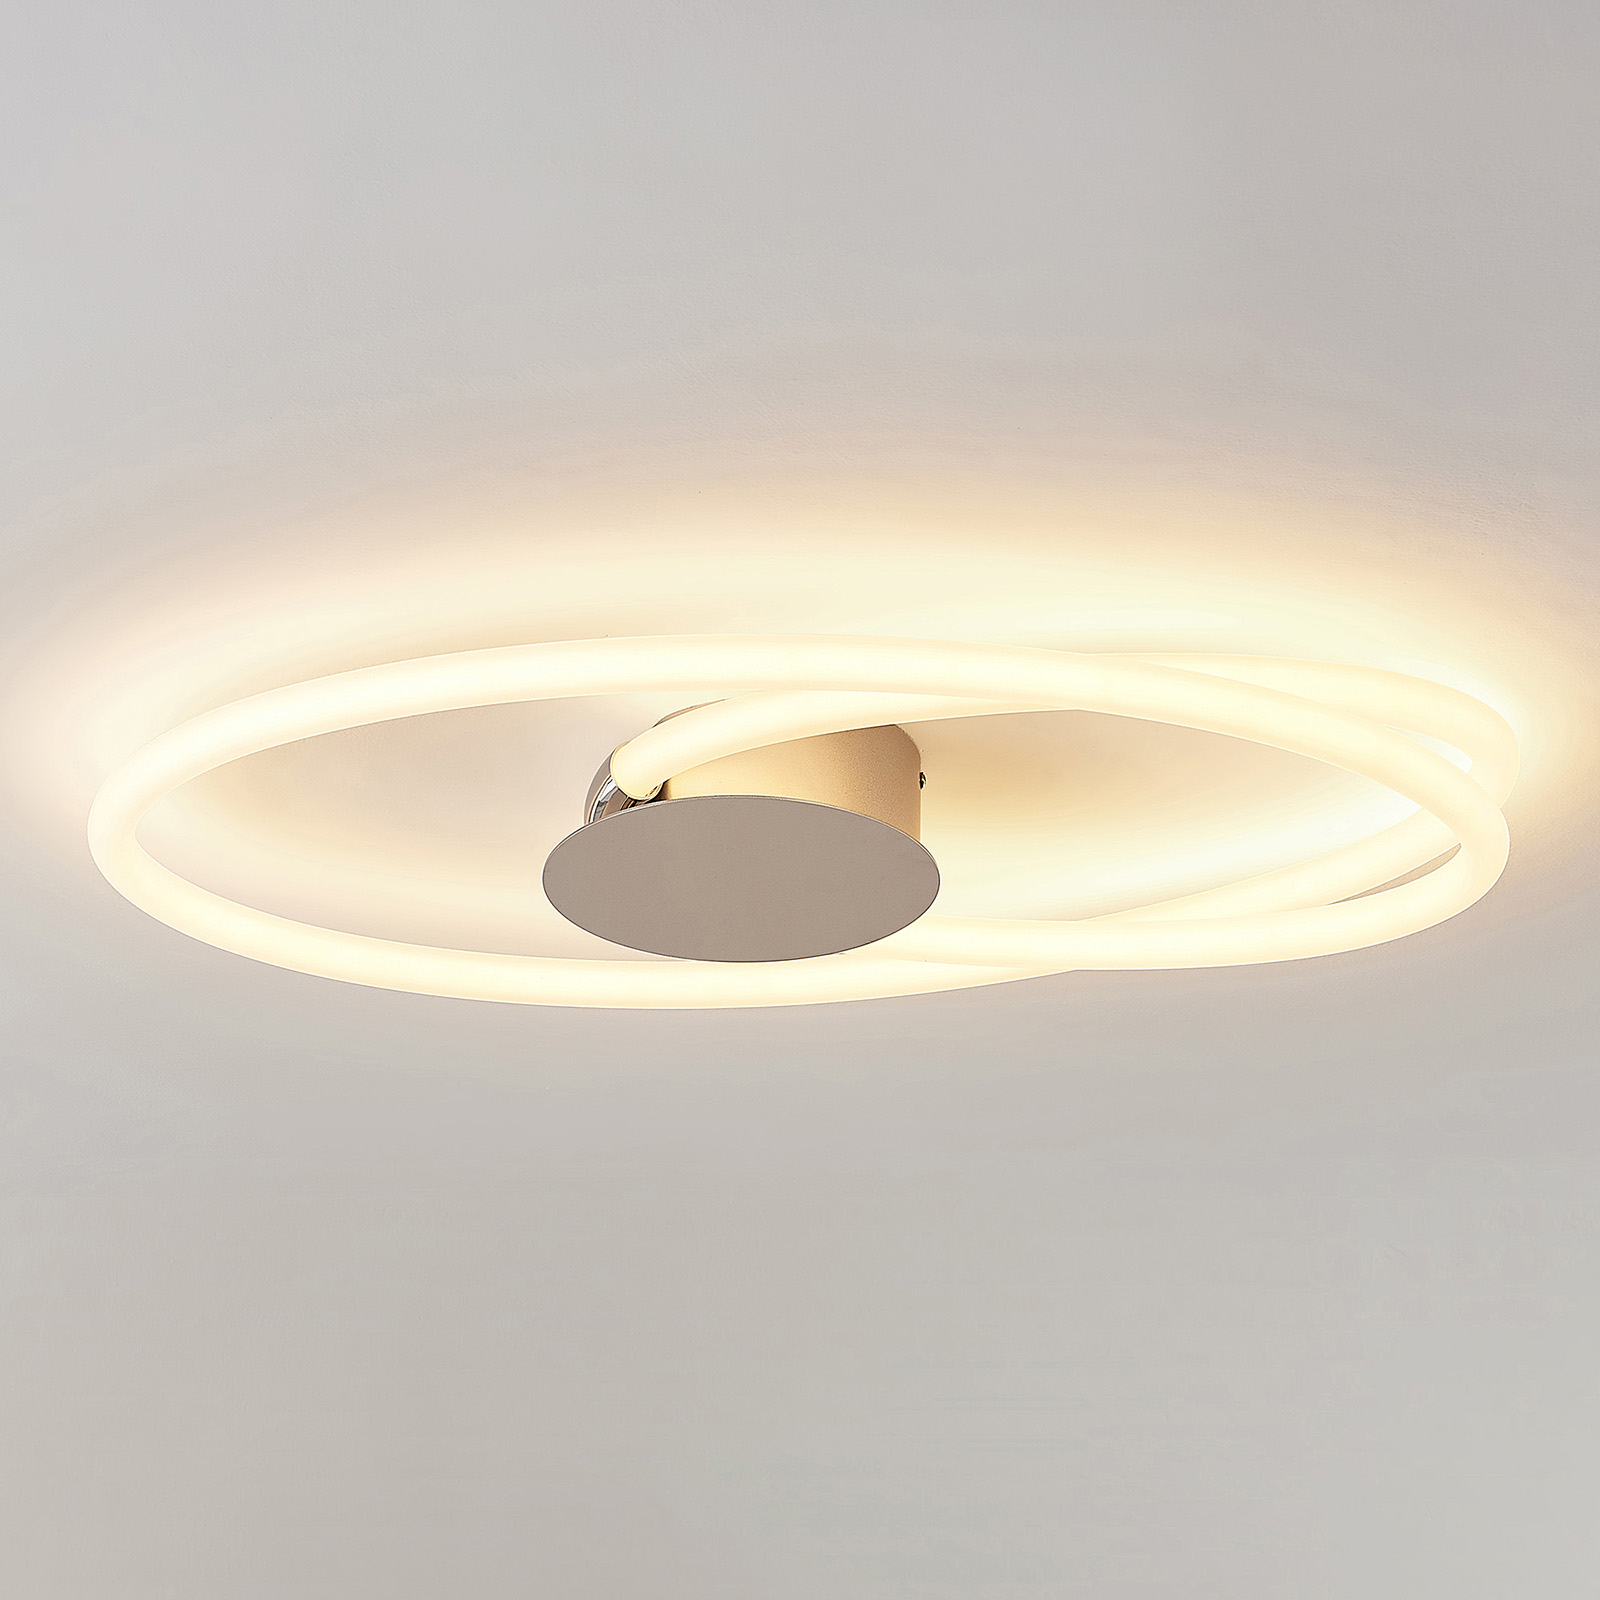 Lucande Ovala LED ceiling light, 72 cm